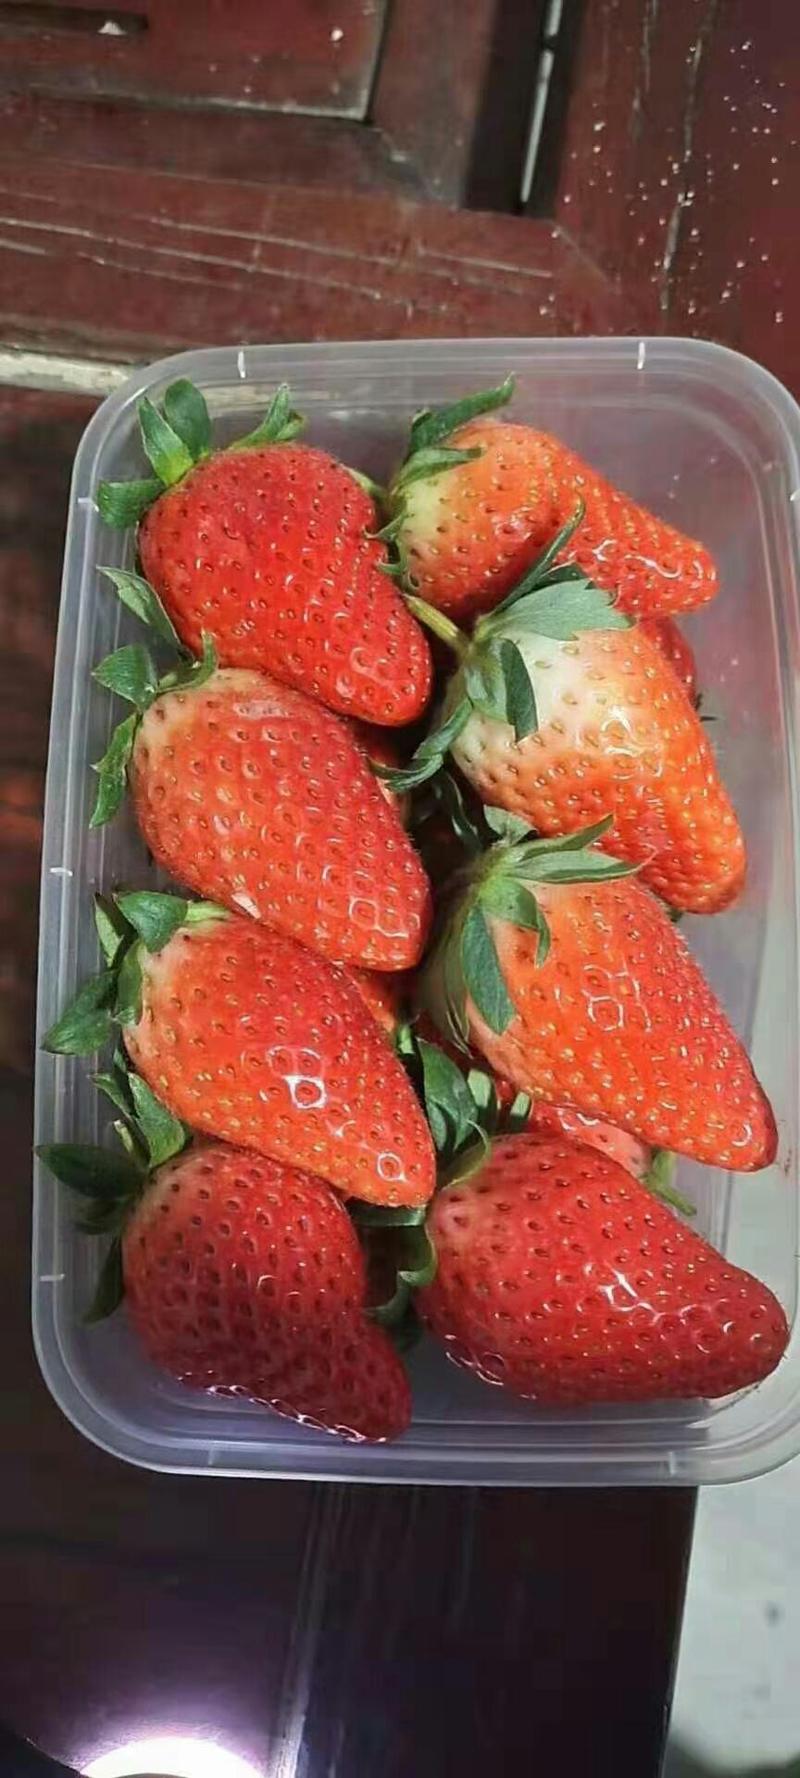 草莓，香甜可口的奶油草莓，诚邀全国各地水果批发订购。